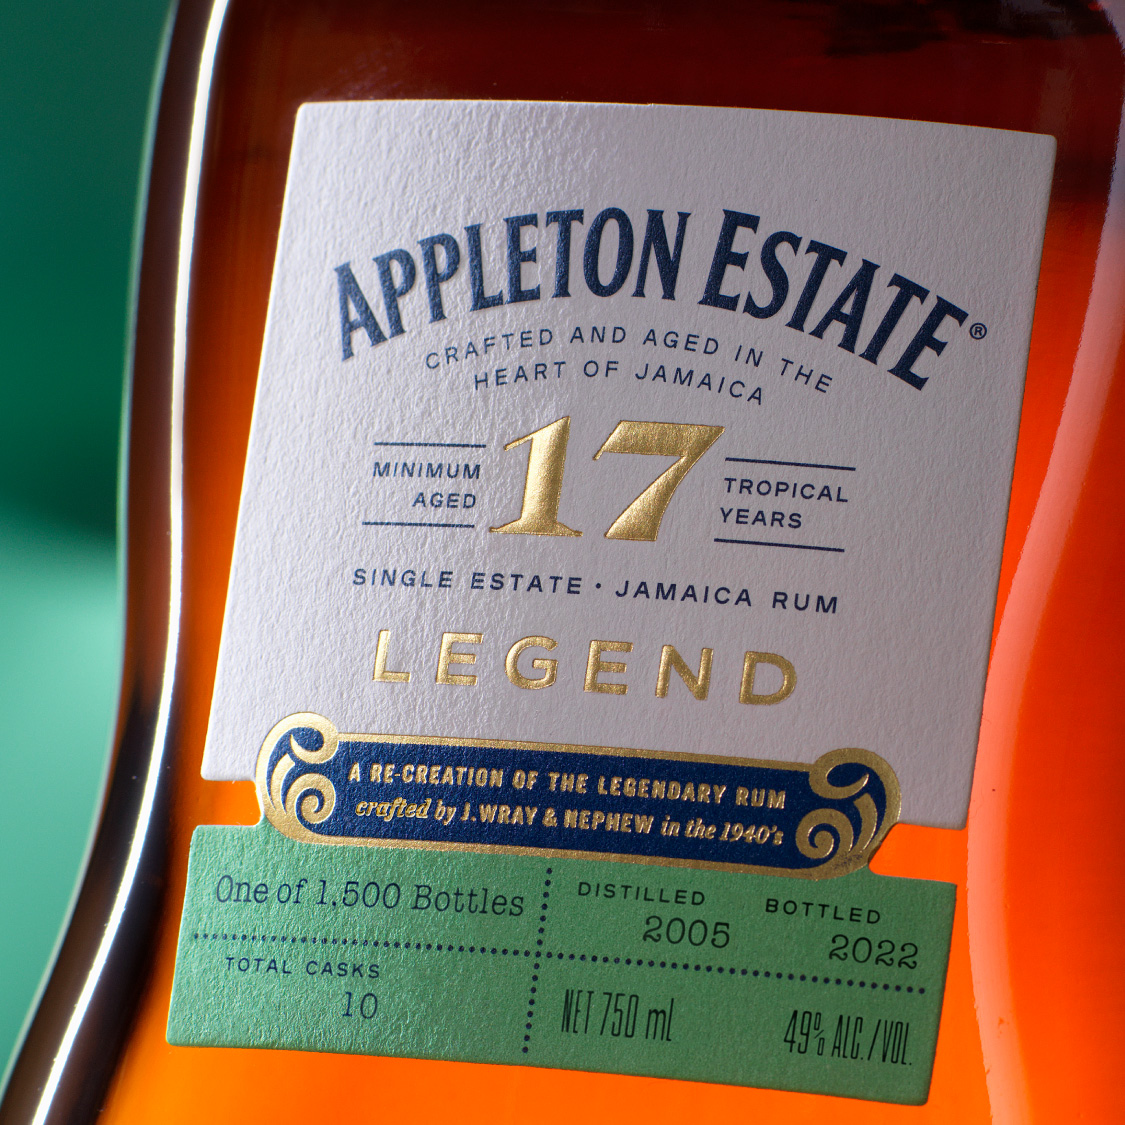 Appleton Estate Jamaica Rum Launches 17 Year Old Legend